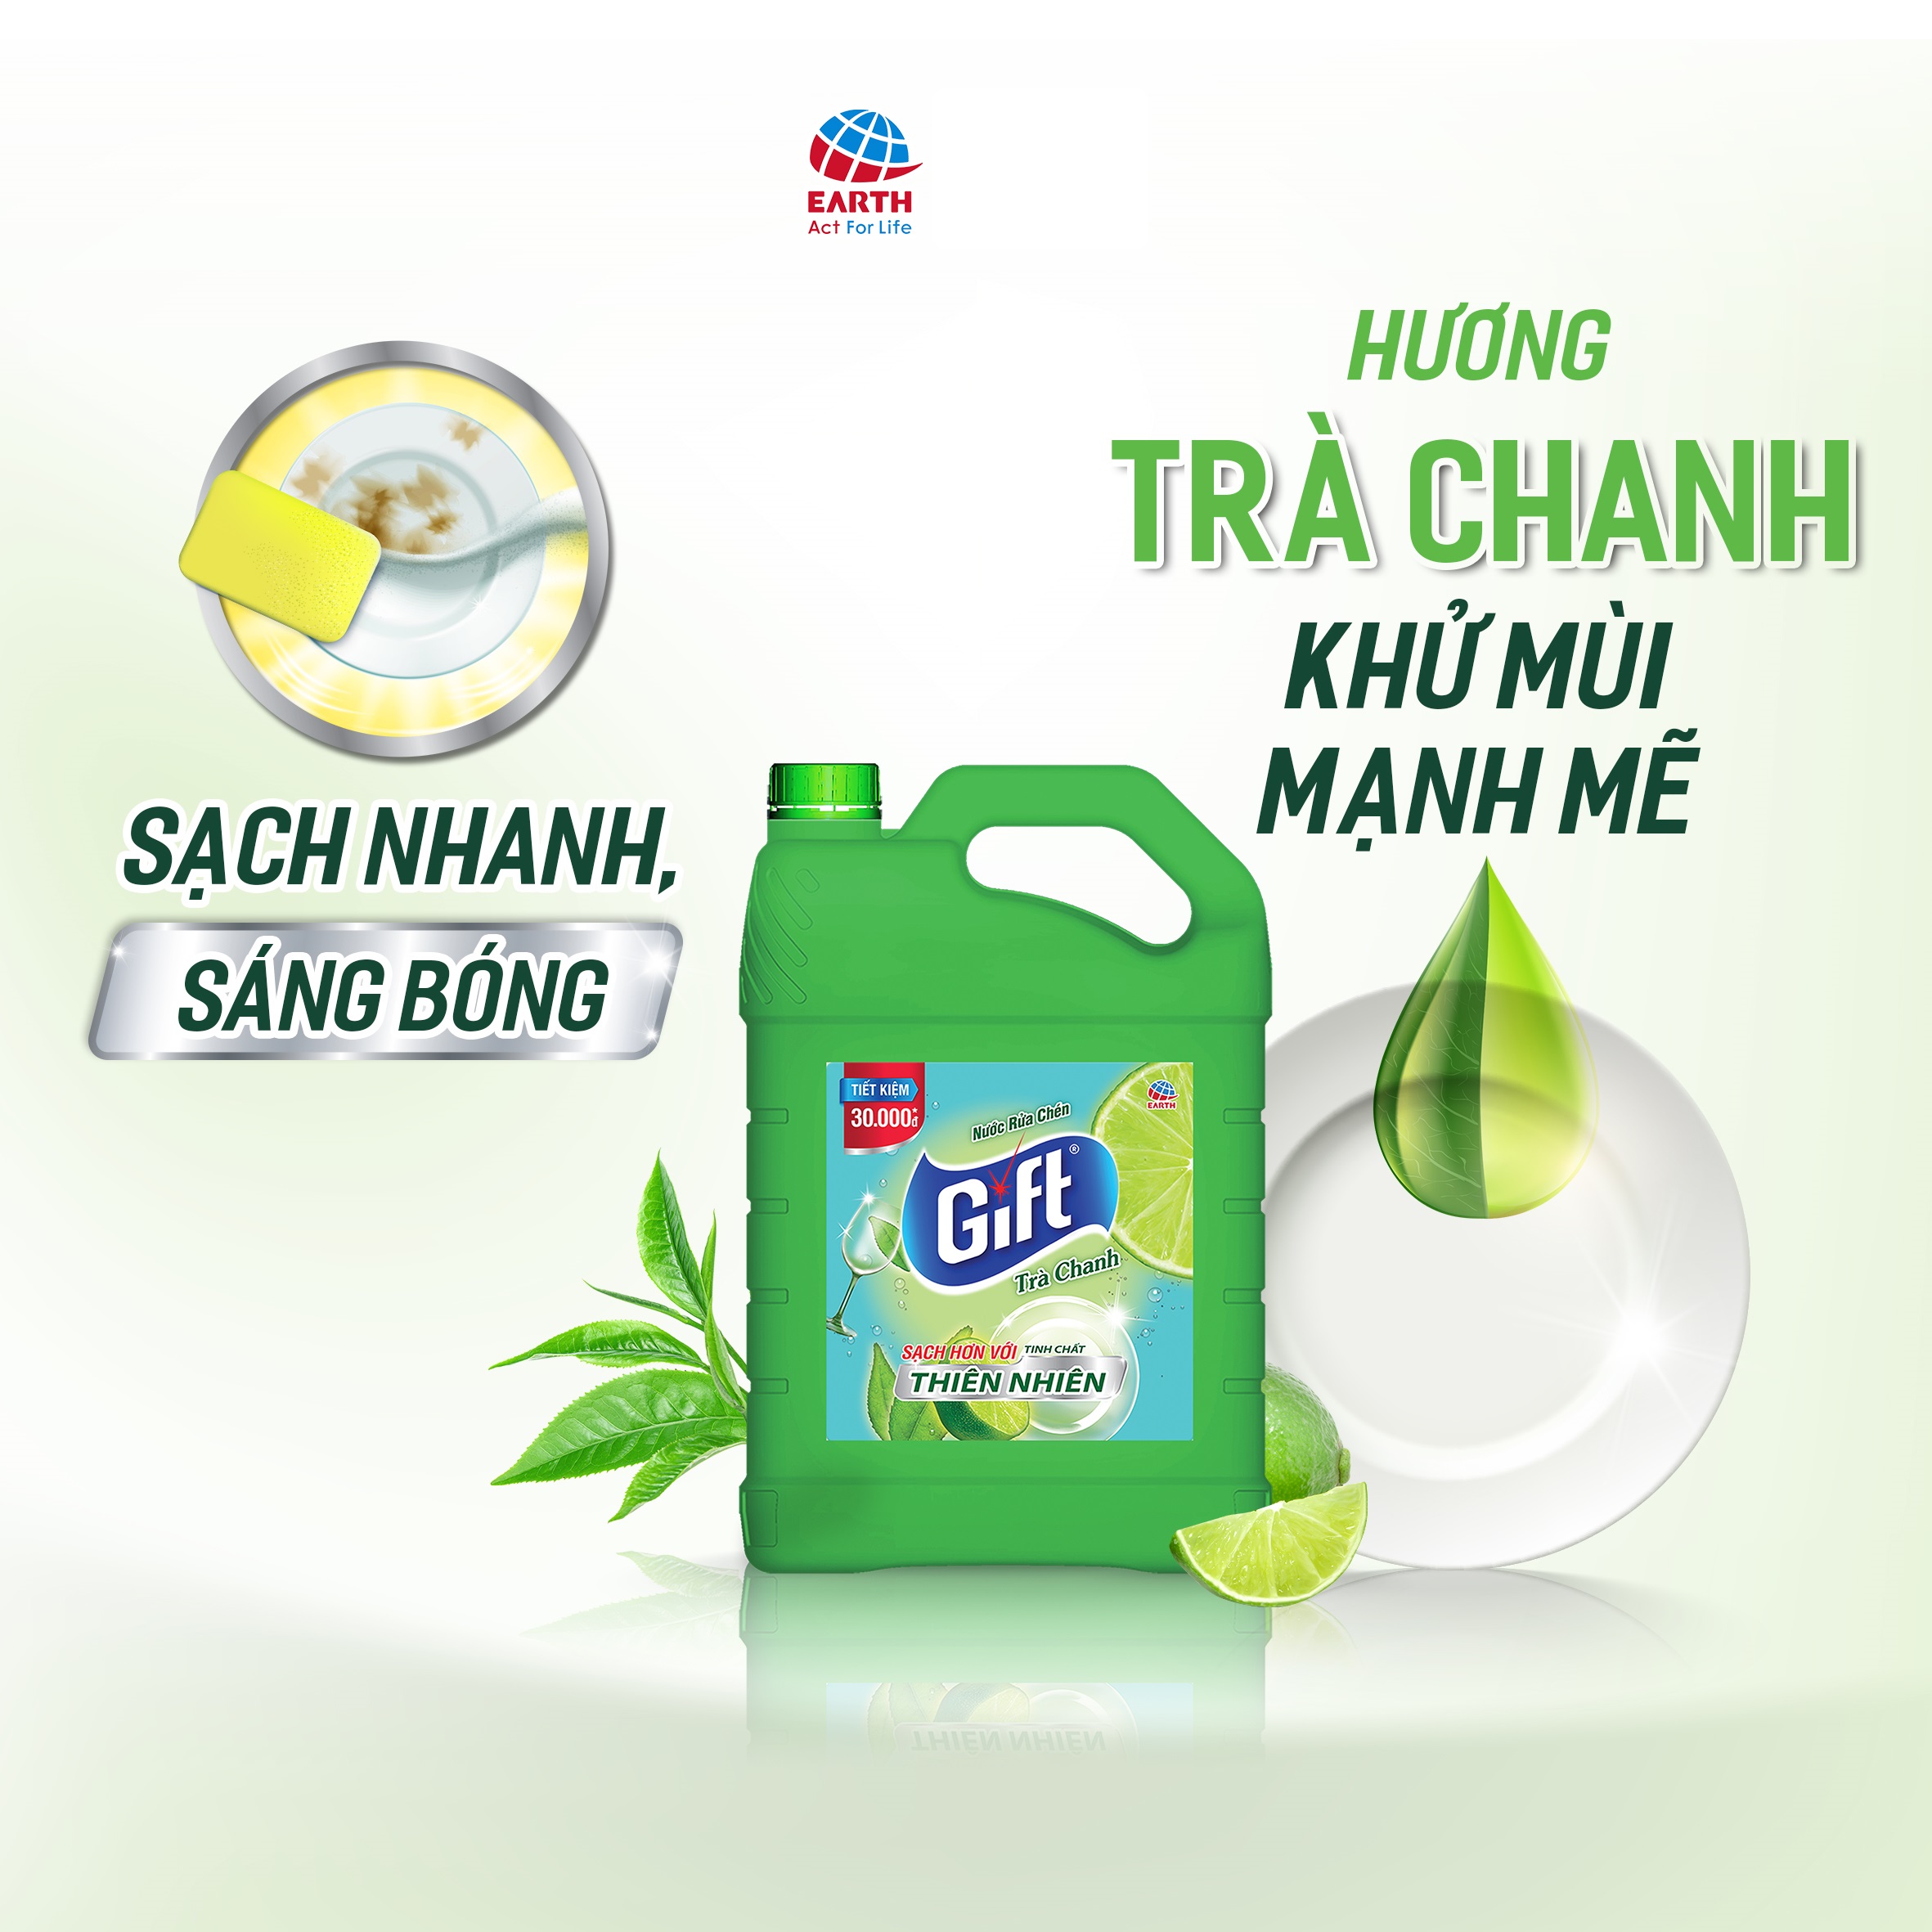 Nước rửa chén Gift Chanh/ Trà Chanh can 3.8 kg